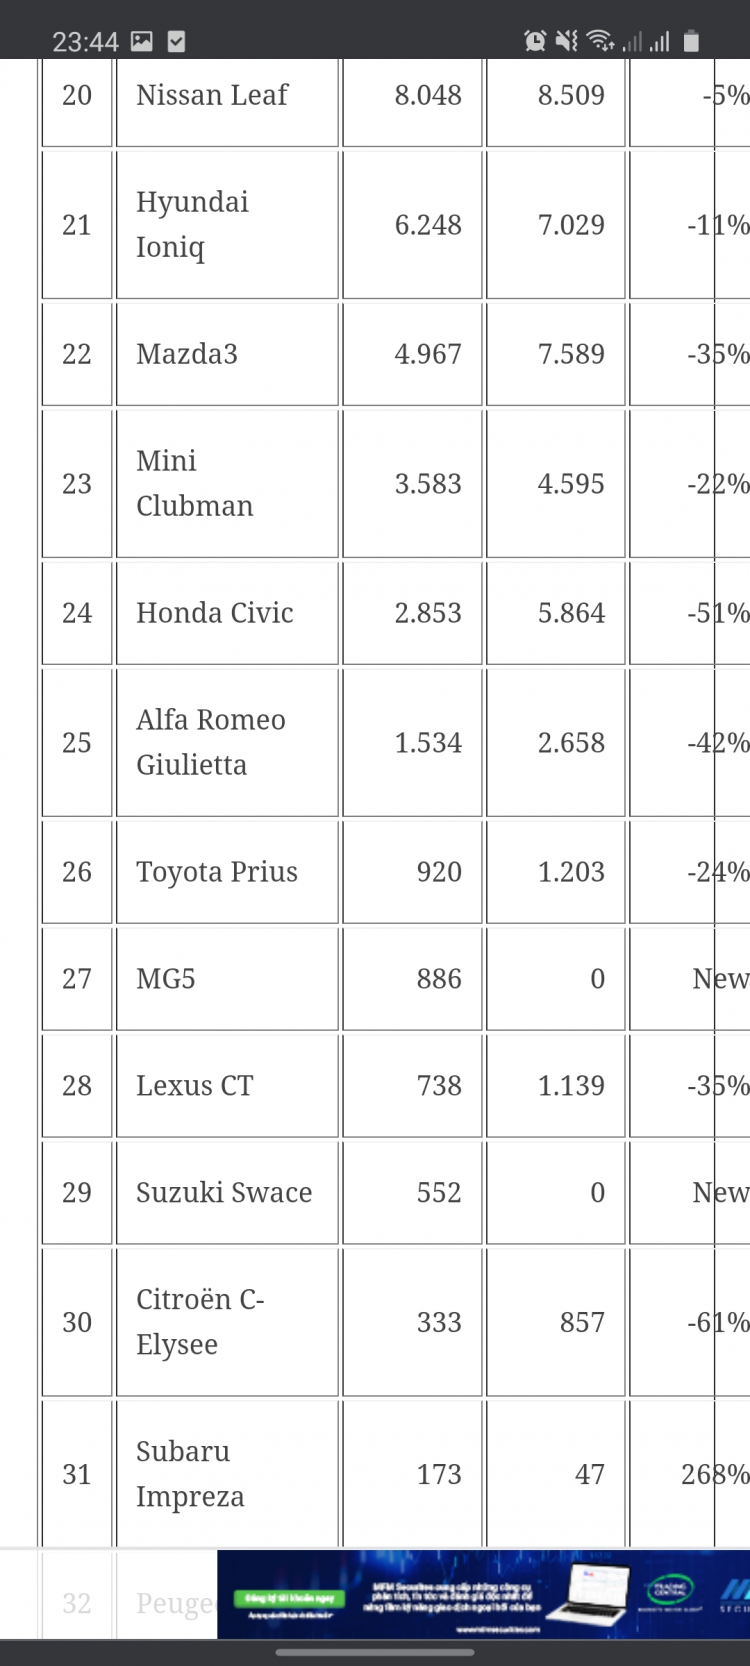 Tháng 7/2021, Hyundai sụt giảm doanh số nhưng Accent, Santa Fe vẫn bán tốt gần 1.000 xe